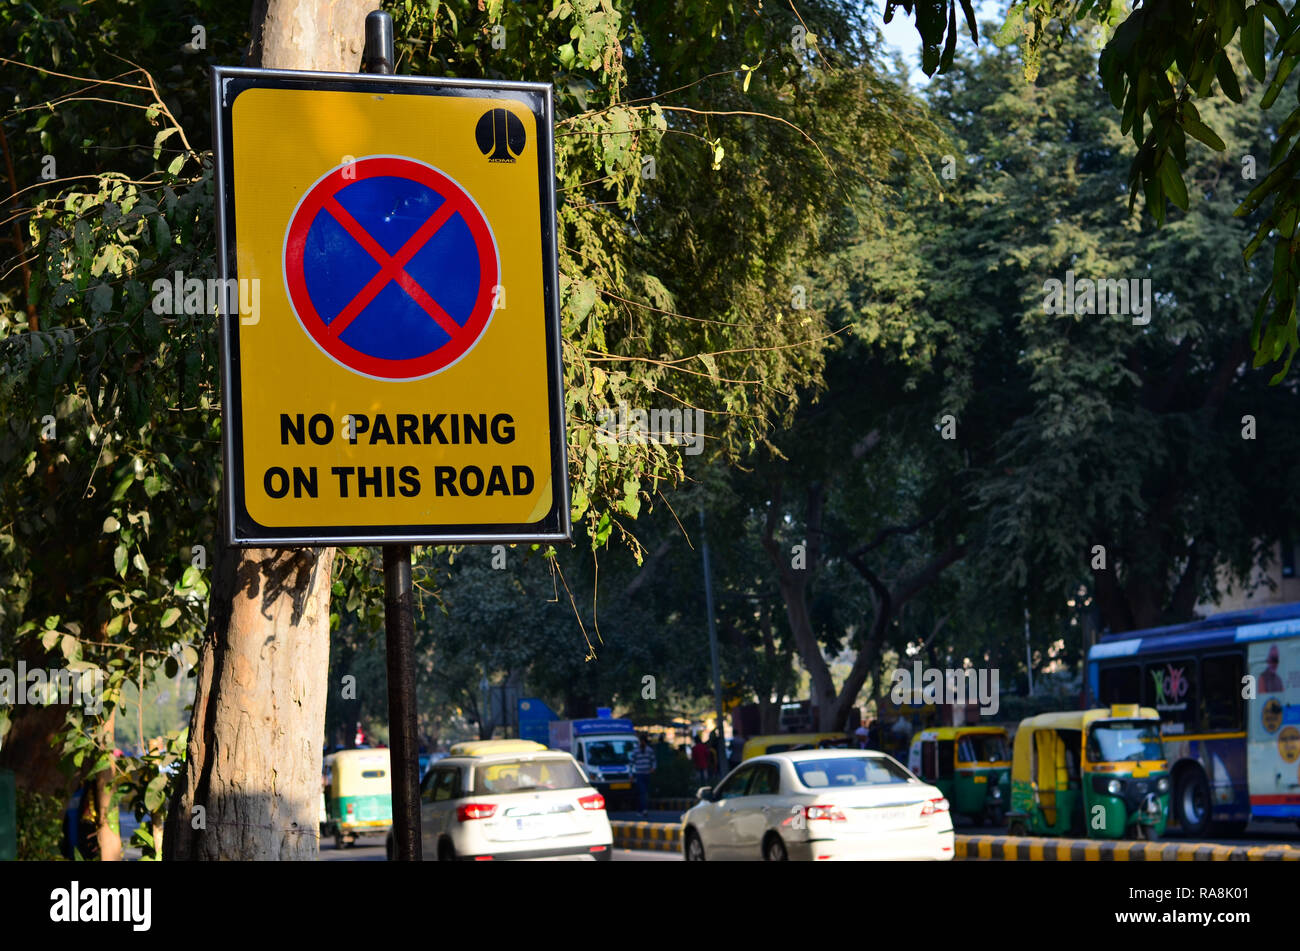 Les plaques de rue sont nécessaires comme ils faire connaître aux gens ce qu'il faut faire sur les routes. Voici une photo d'un "pas de parking sur cette route' street sign in Delhi Banque D'Images